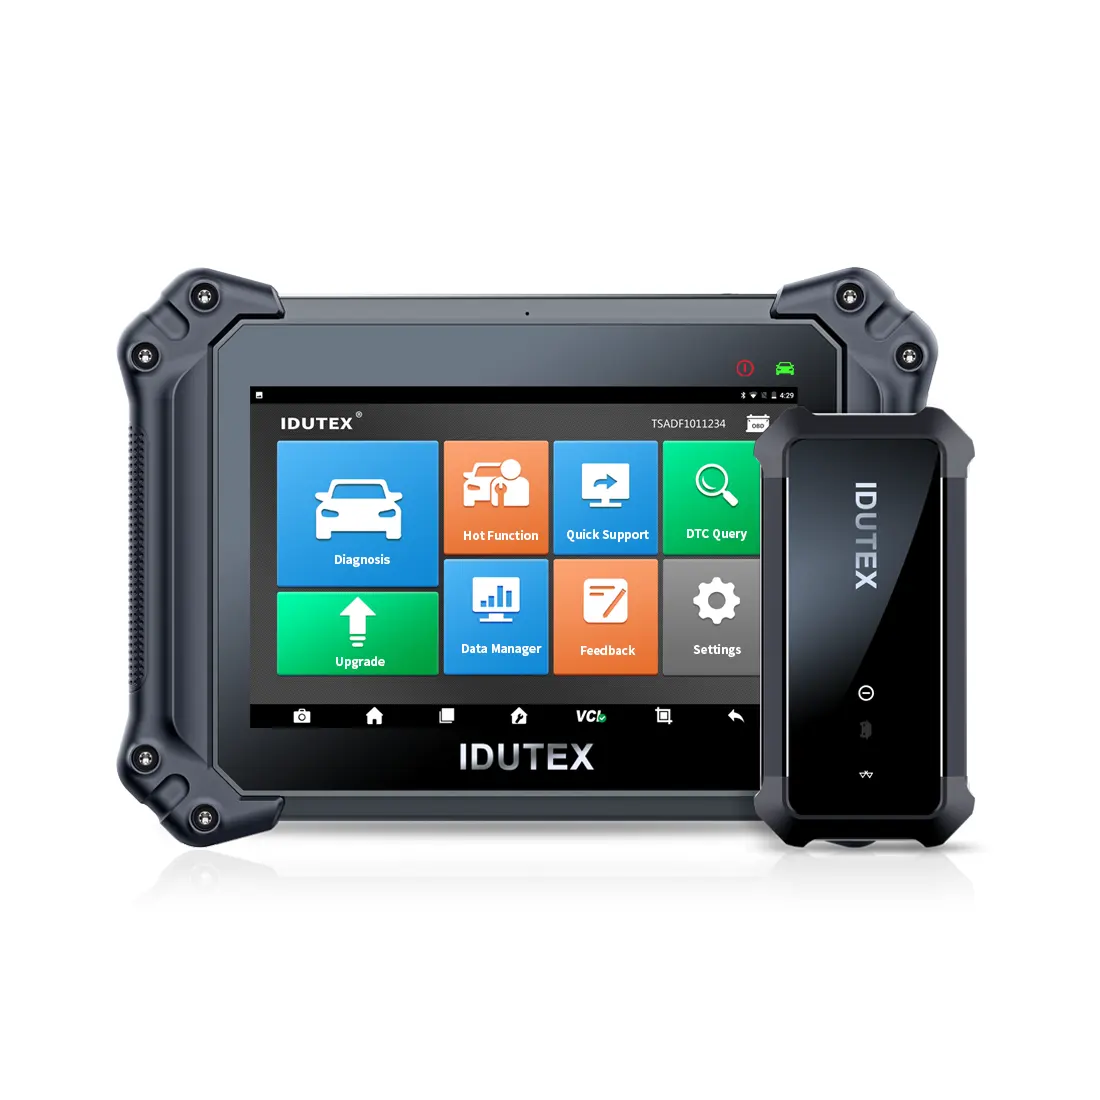 Idutex-escáner de diagnóstico para coche, herramienta de reparación de automóviles, obd, 2 años de actualización gratuita, DS 810 Plus